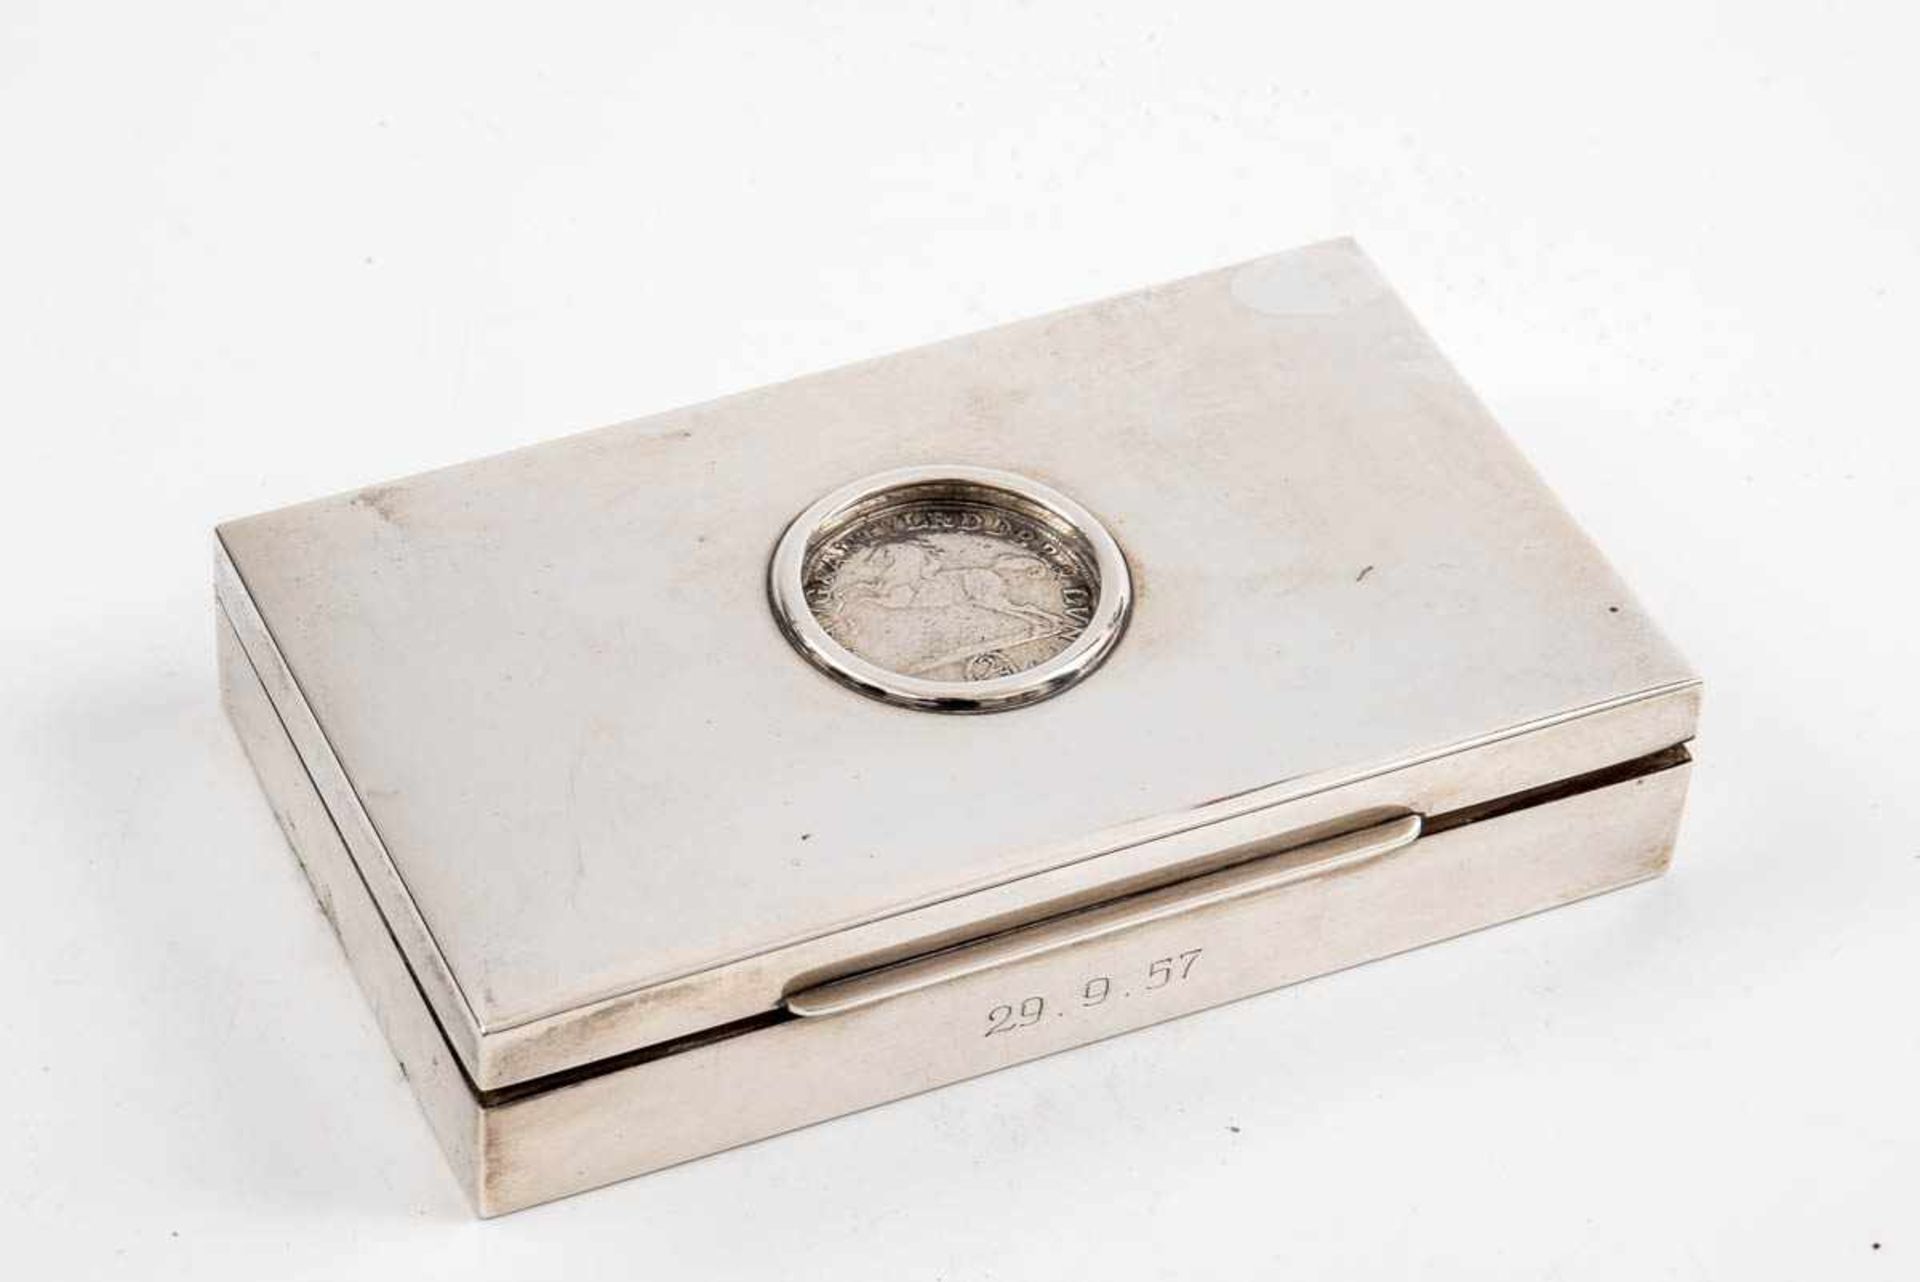 Kästchen mit Marien Grosch 925er Silber, L.: 15 cm, Br.: 9 cm, T.: 3 cm. Mittig mit